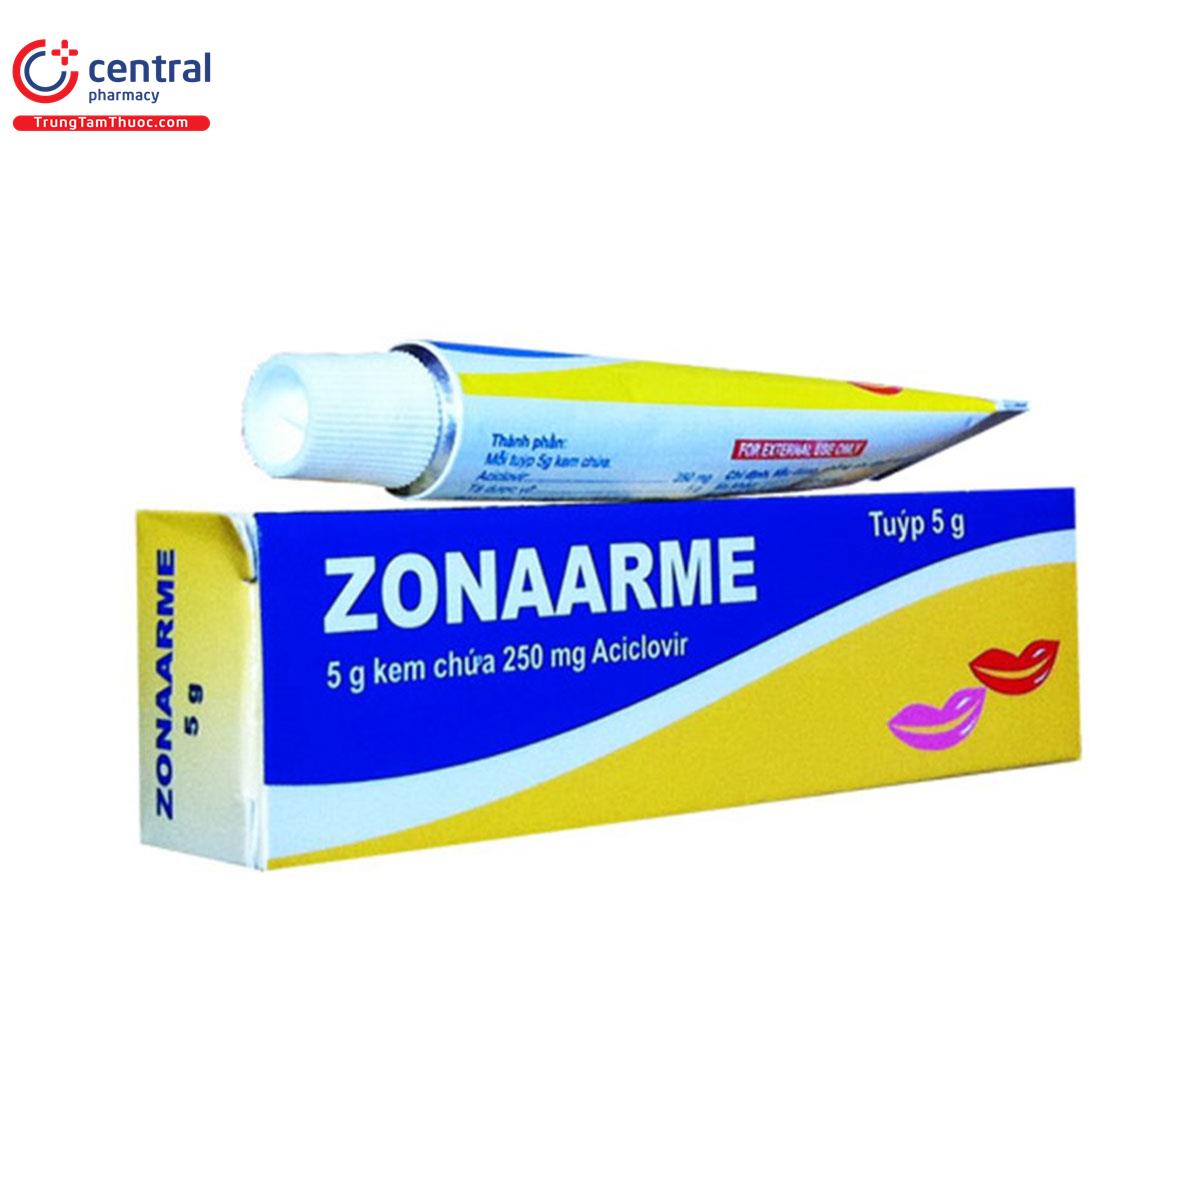 zonaarme 2 E1376